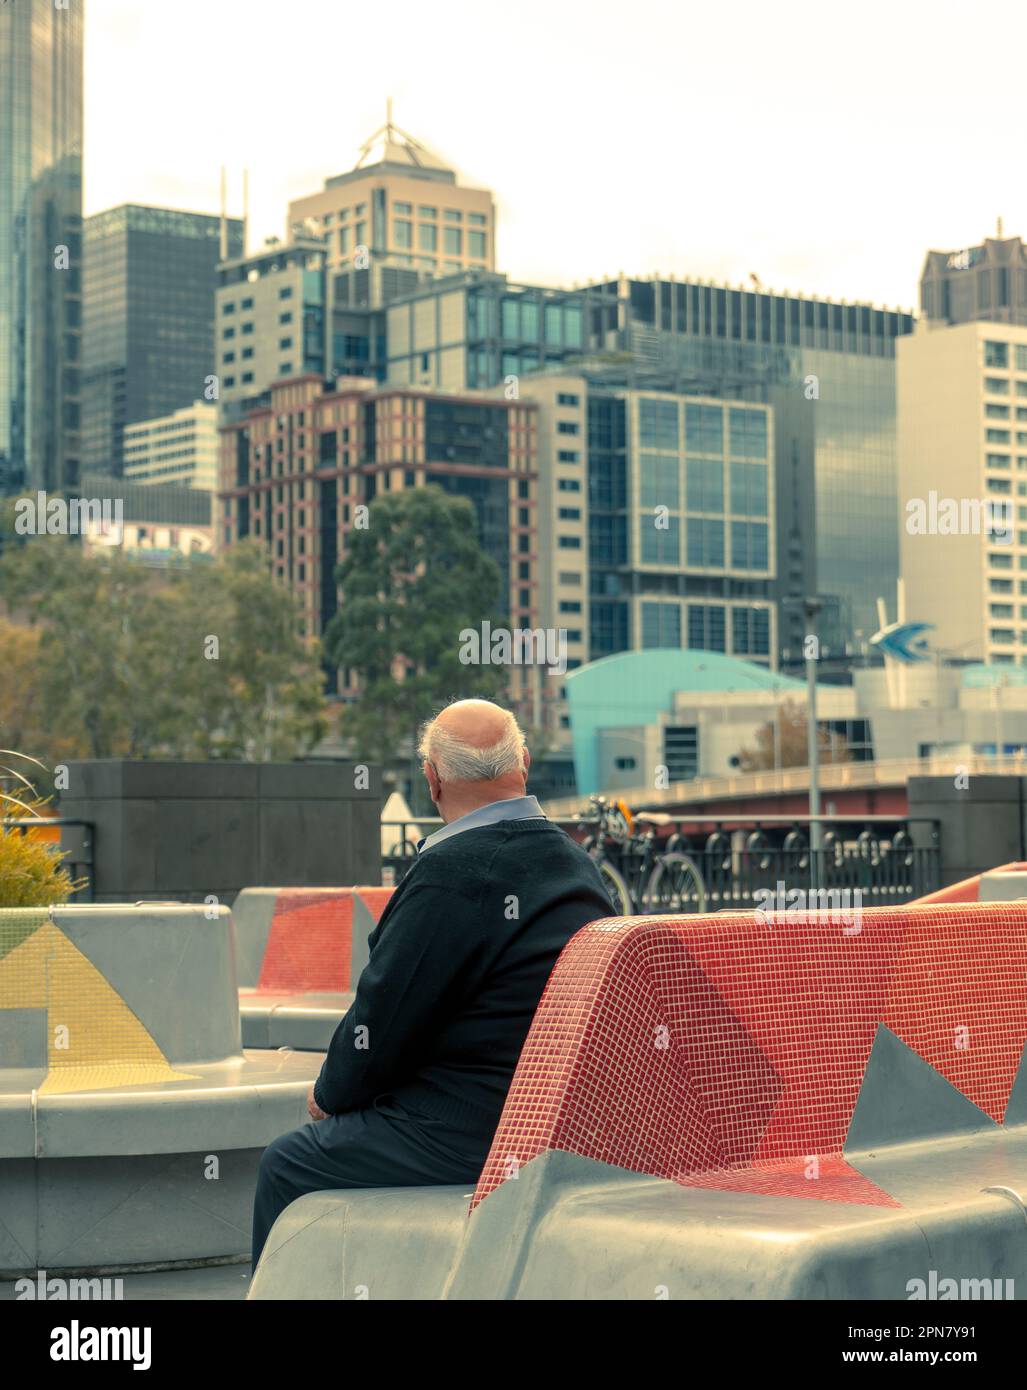 Melbourne, Australie - vieil homme assis sur un banc de béton et regardant les gratte-ciel de la ville Banque D'Images